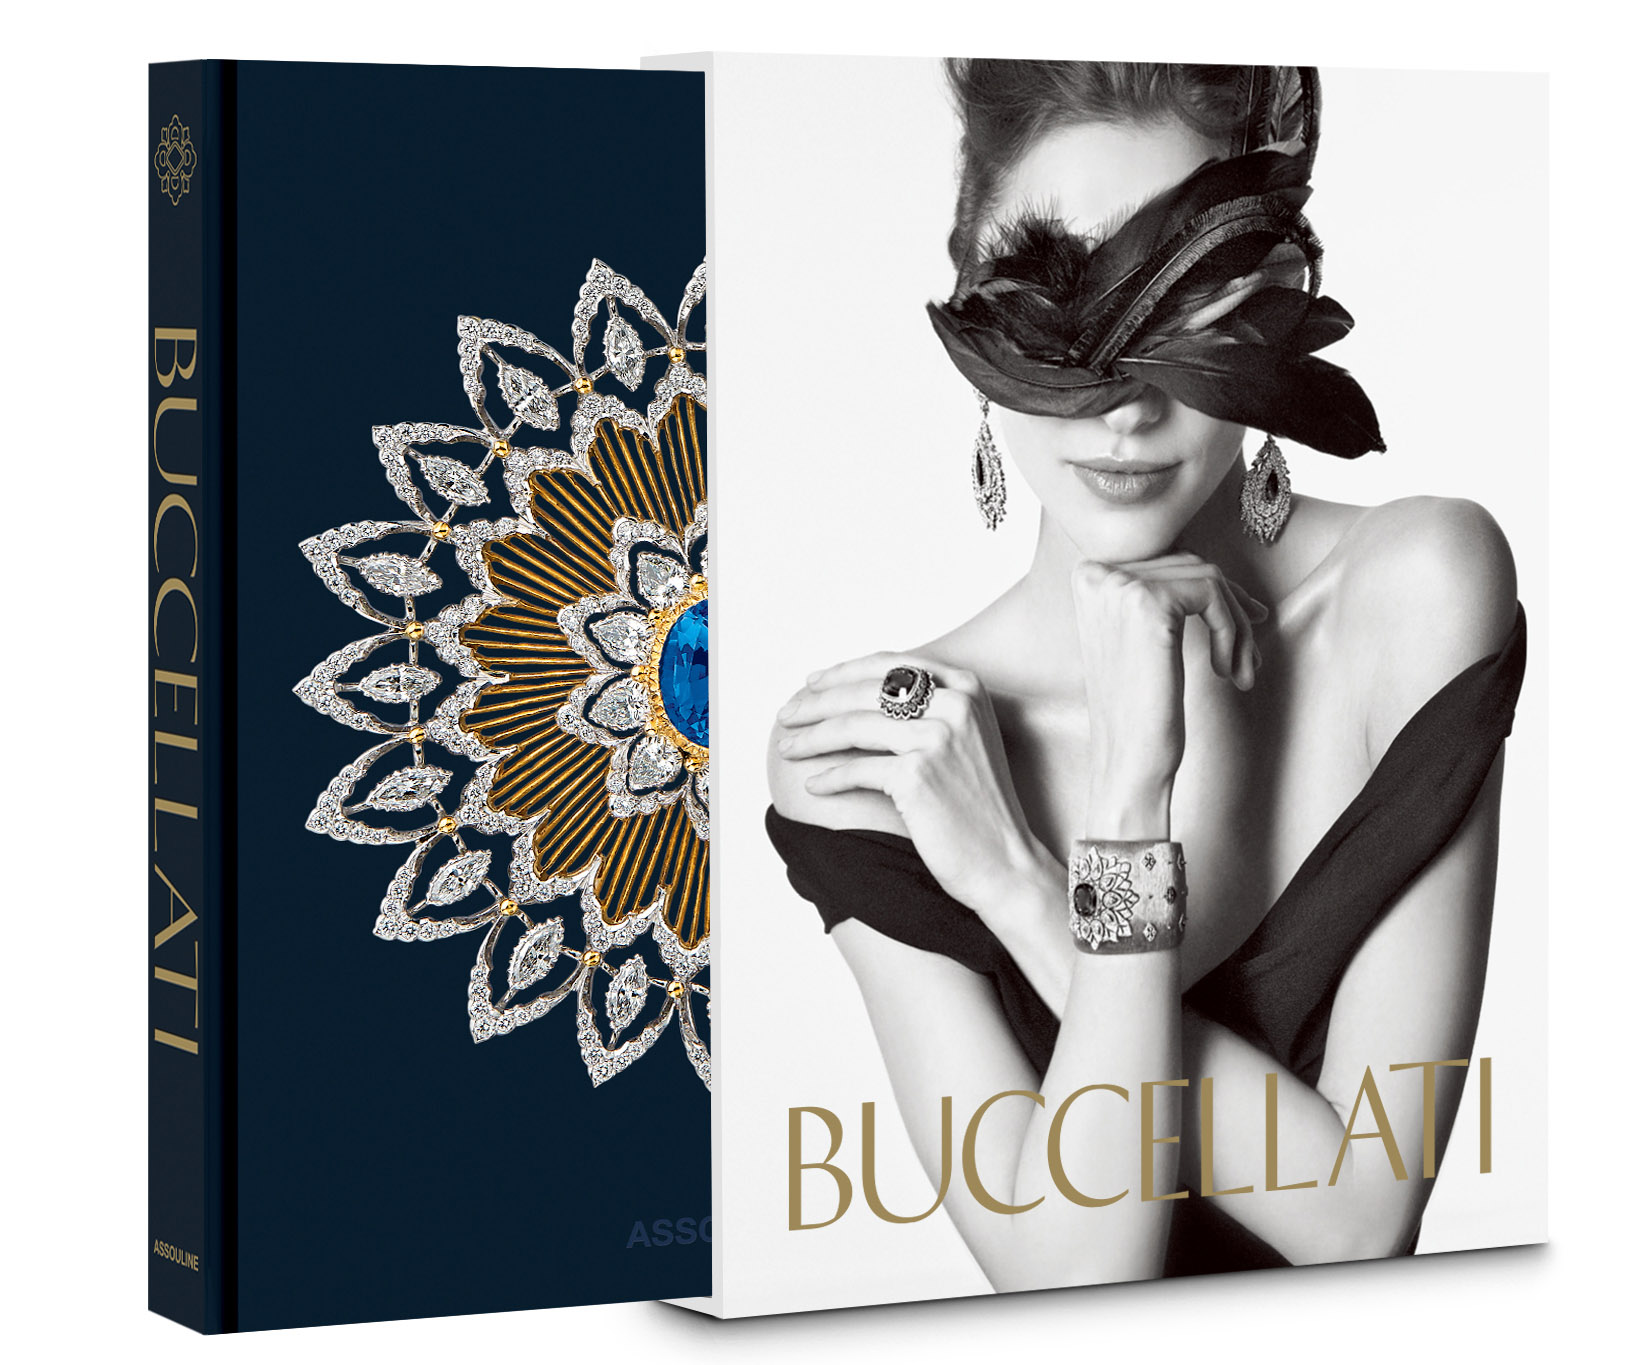 Buccellati book cover